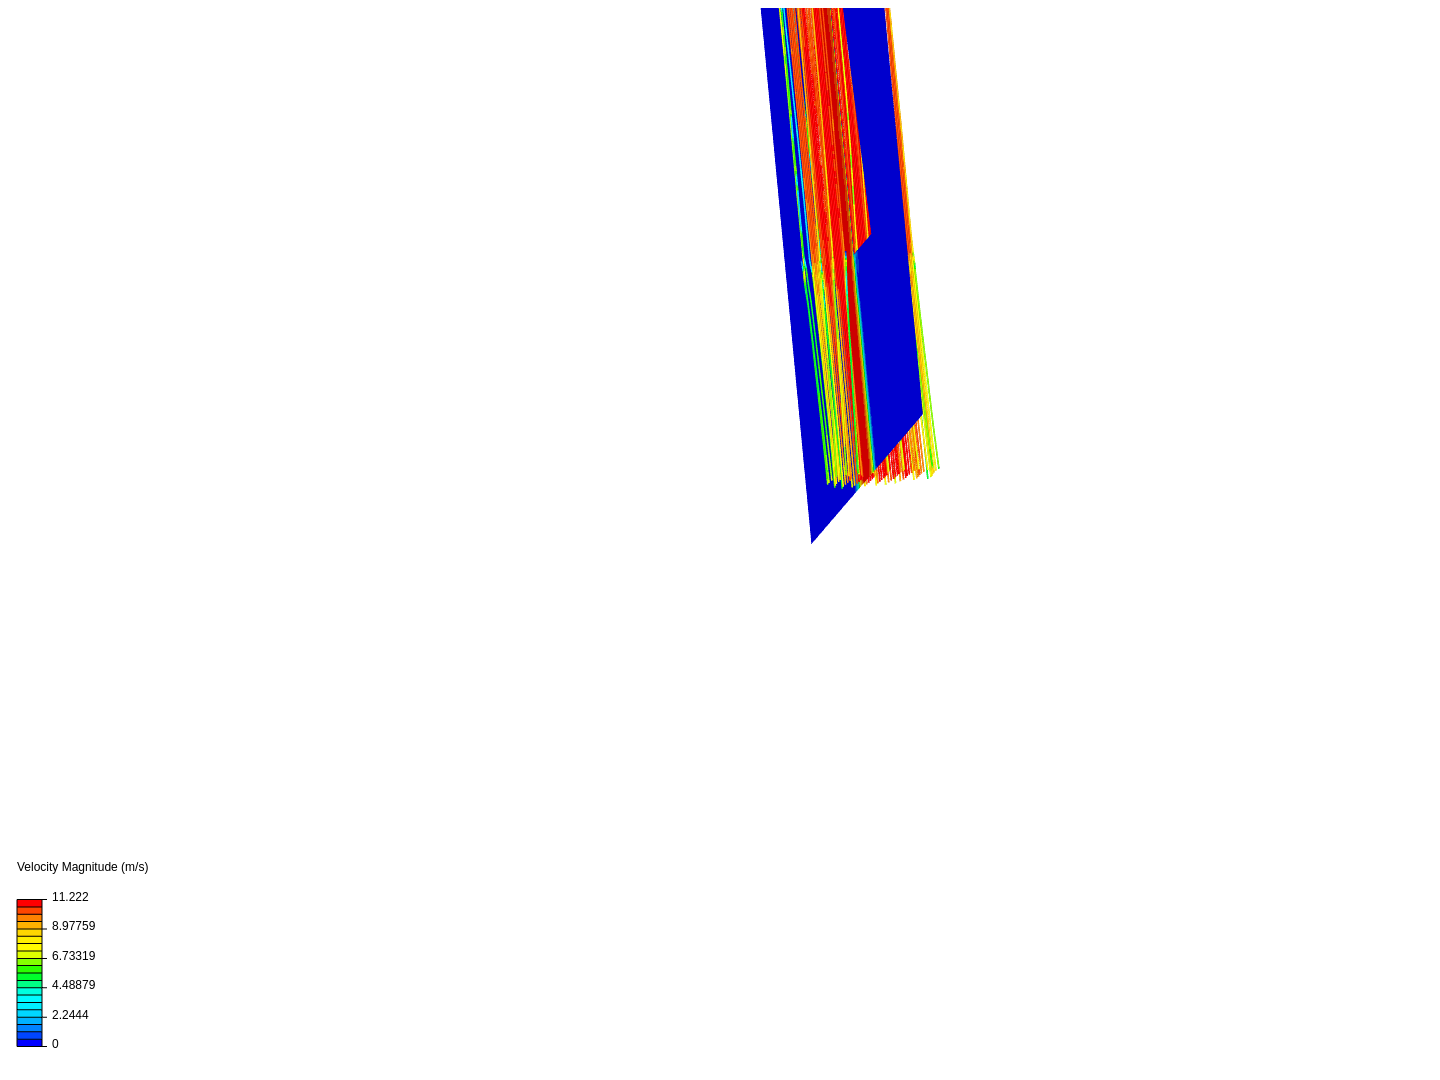 Test Rocket Engine Flow image